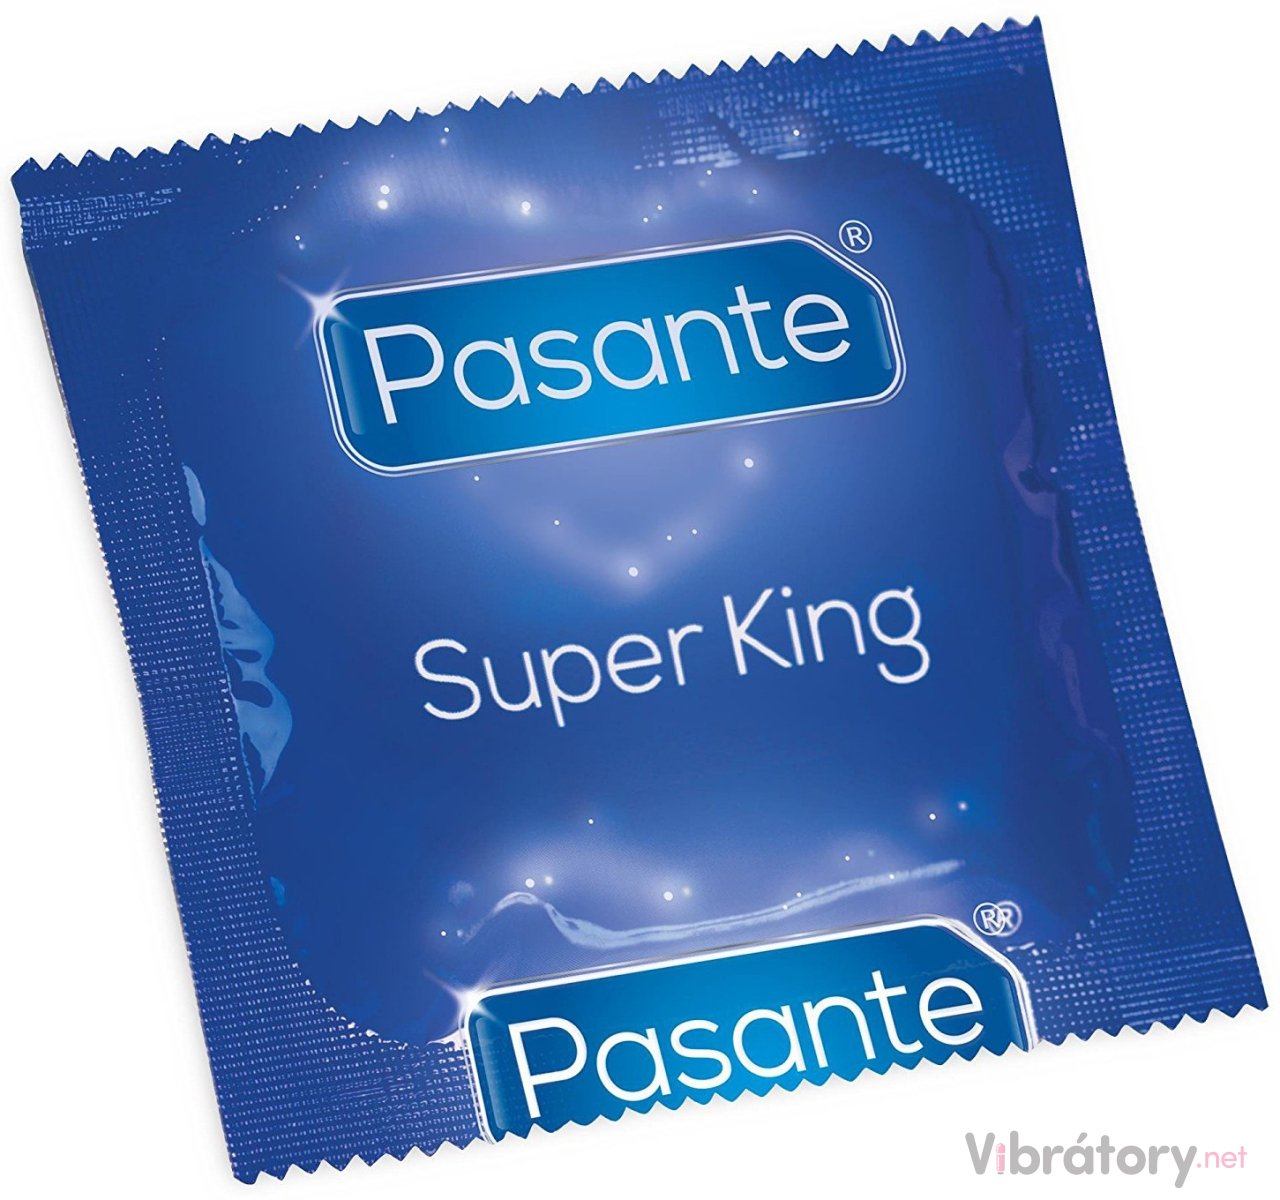 Kondom Pasante Super King Size, 1 ks